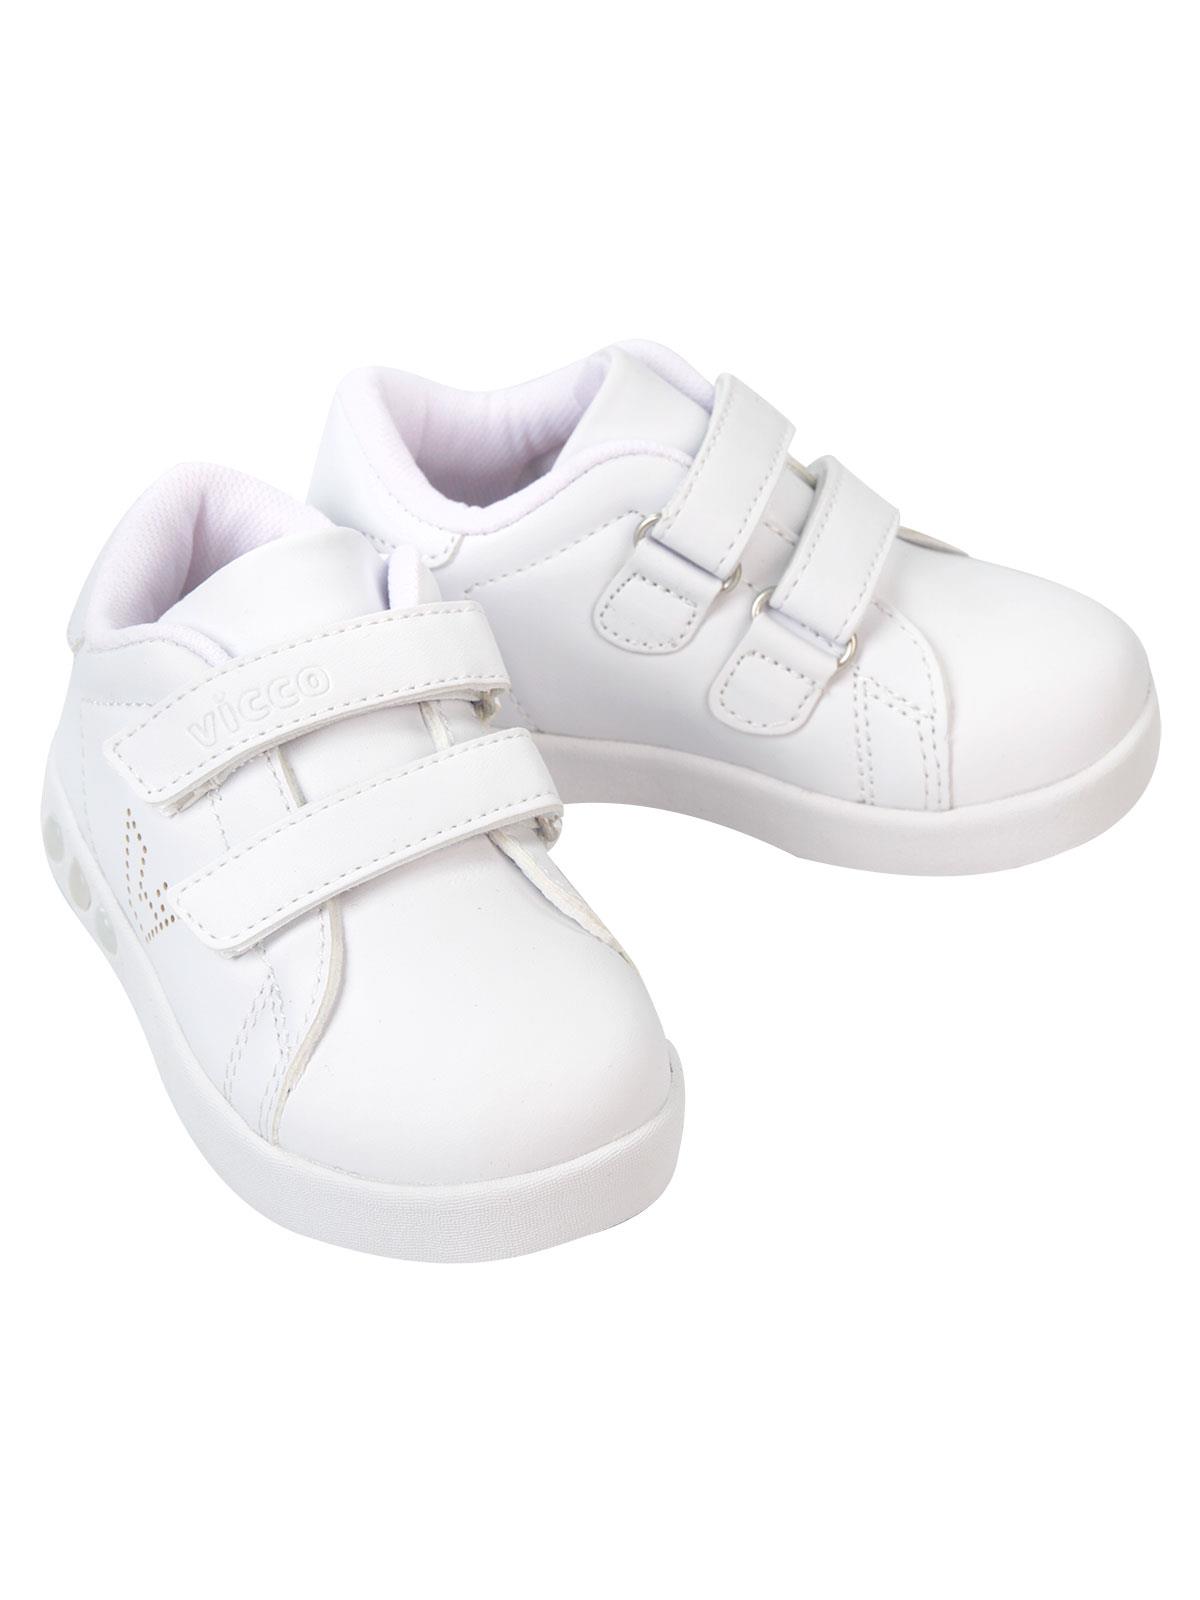 Vicco Çocuk Işıklı Spor Ayakkabıı 22-25 Numara Beyaz